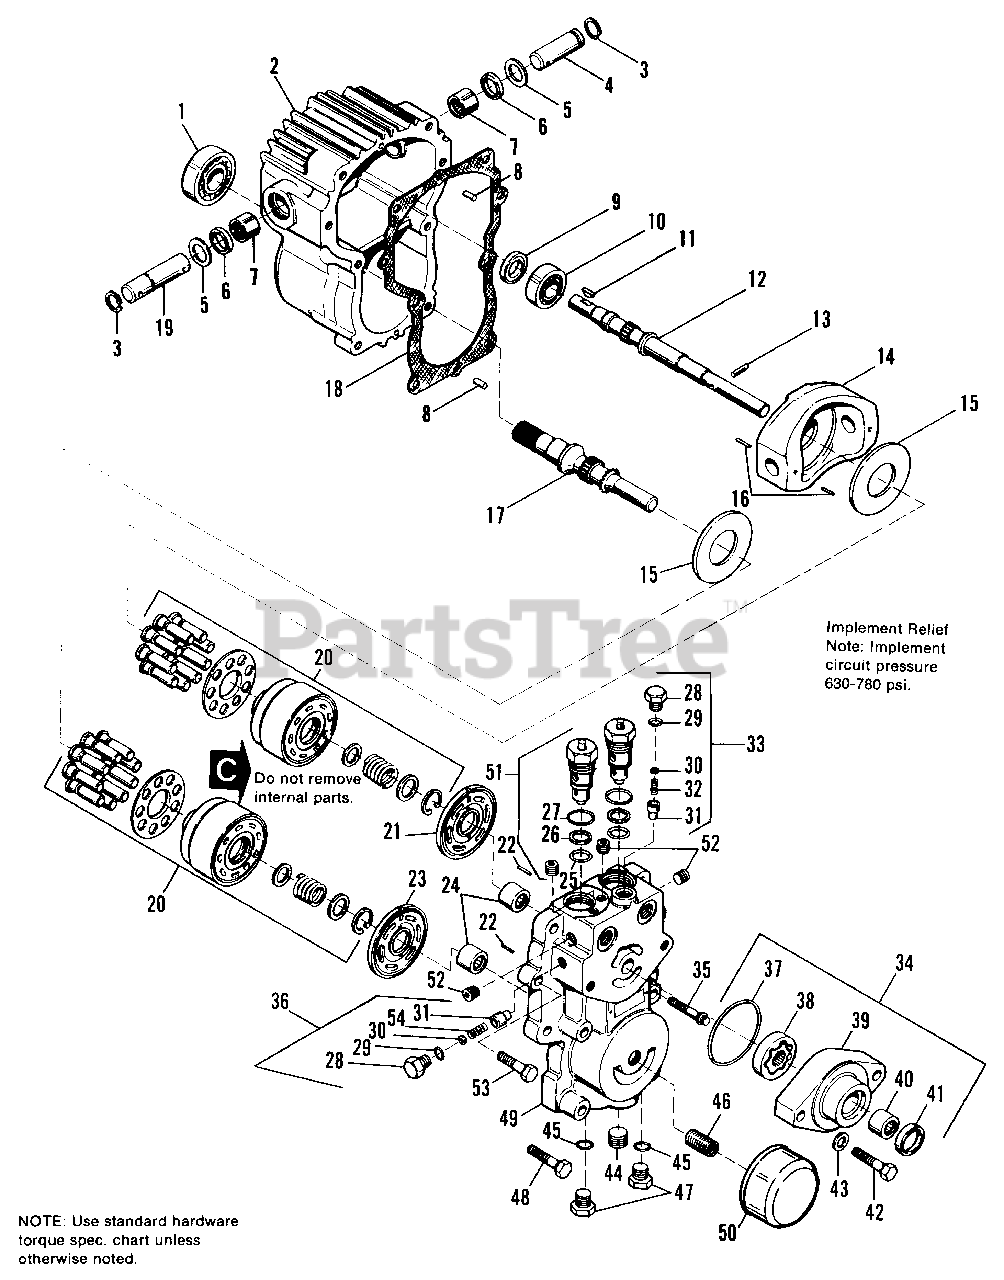 Allis-Chalmers 917 H (1691123) - Allis-Chalmers Garden Tractor, 17hp ...